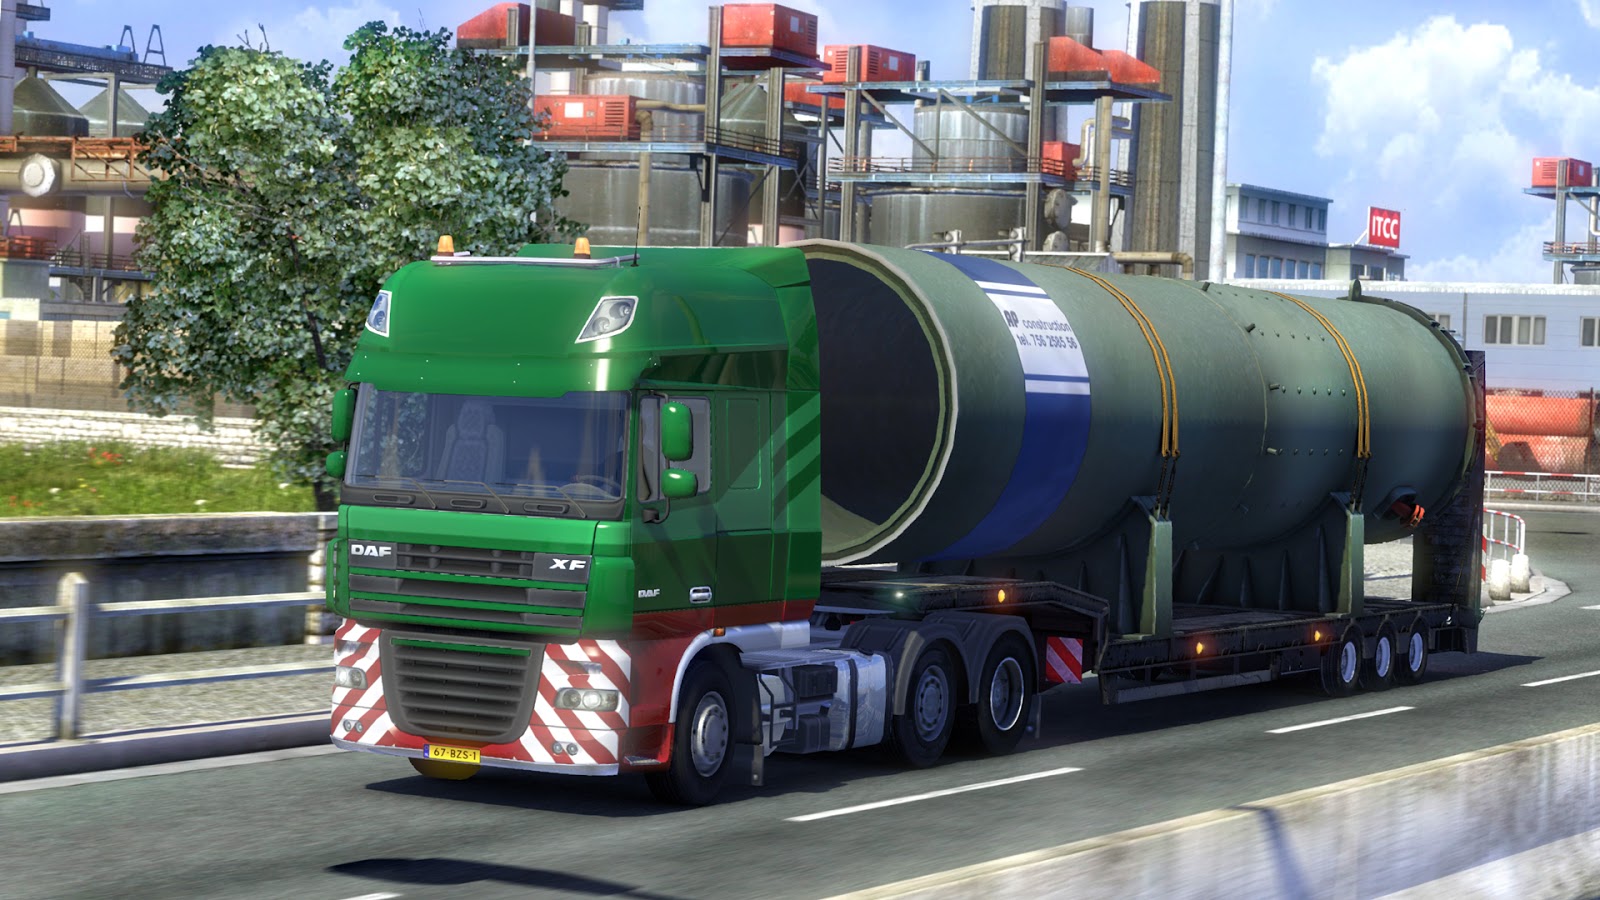 Euro truck simulator 2 free. download full